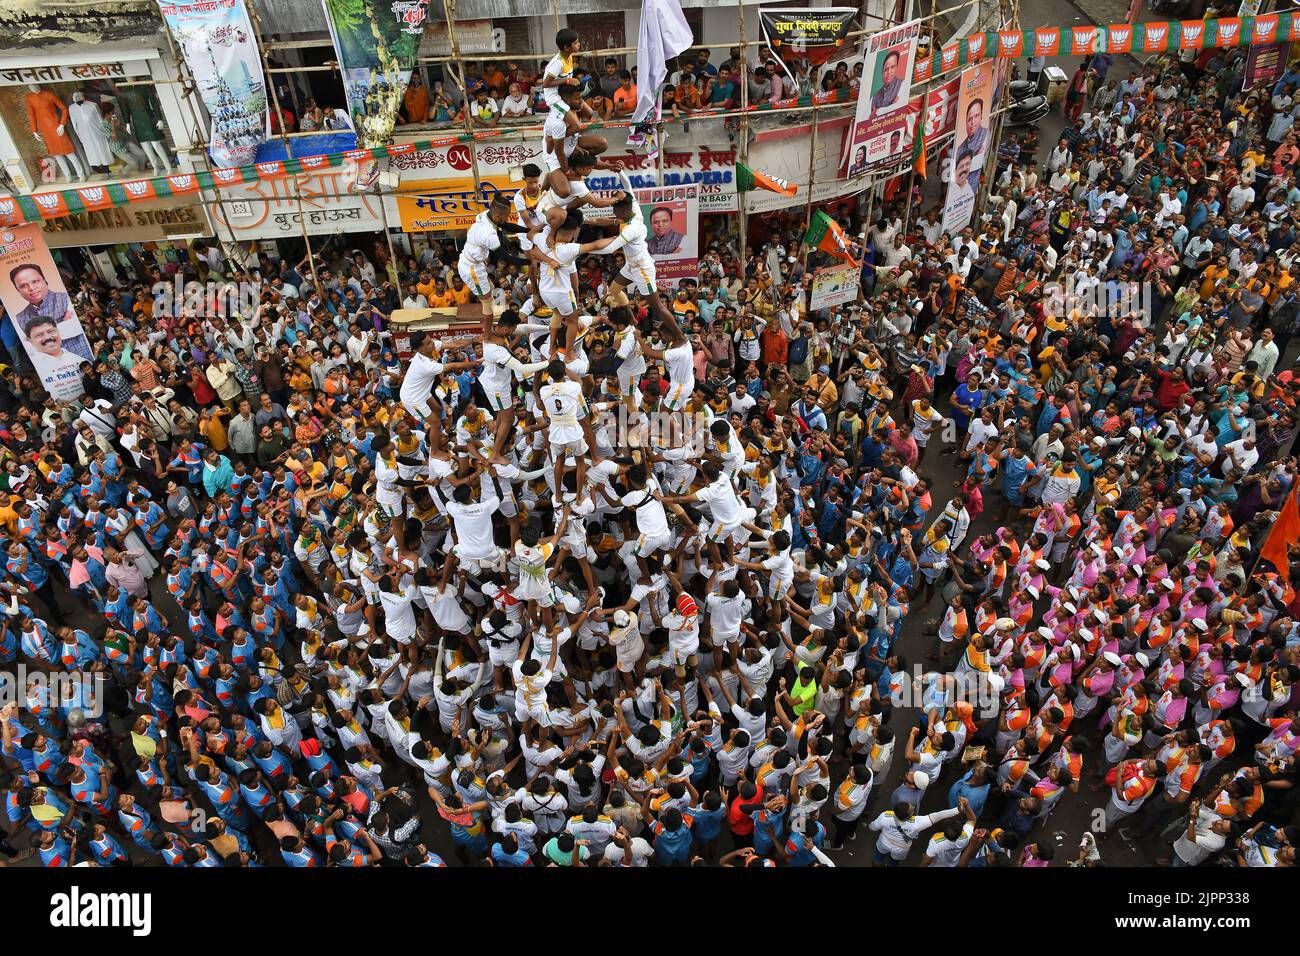 Mumbai, Indien. 19. August 2022. Hinduistische Anhänger bilden eine menschliche Pyramide, um Dahi handi (irdischer Topf mit Quark gefüllt) während des Janmashtami-Festivals in Mumbai zu brechen. Janmashtami wird gefeiert, um die Geburt von Lord Krishna zu markieren. Hinduistische Anhänger versammeln sich auf den Straßen und bilden akrobatische Pyramiden, um Dahi handi (irdischer Topf mit Quark gefüllt) zu brechen, um den Anlass zu feiern. Kredit: SOPA Images Limited/Alamy Live Nachrichten Stockfoto